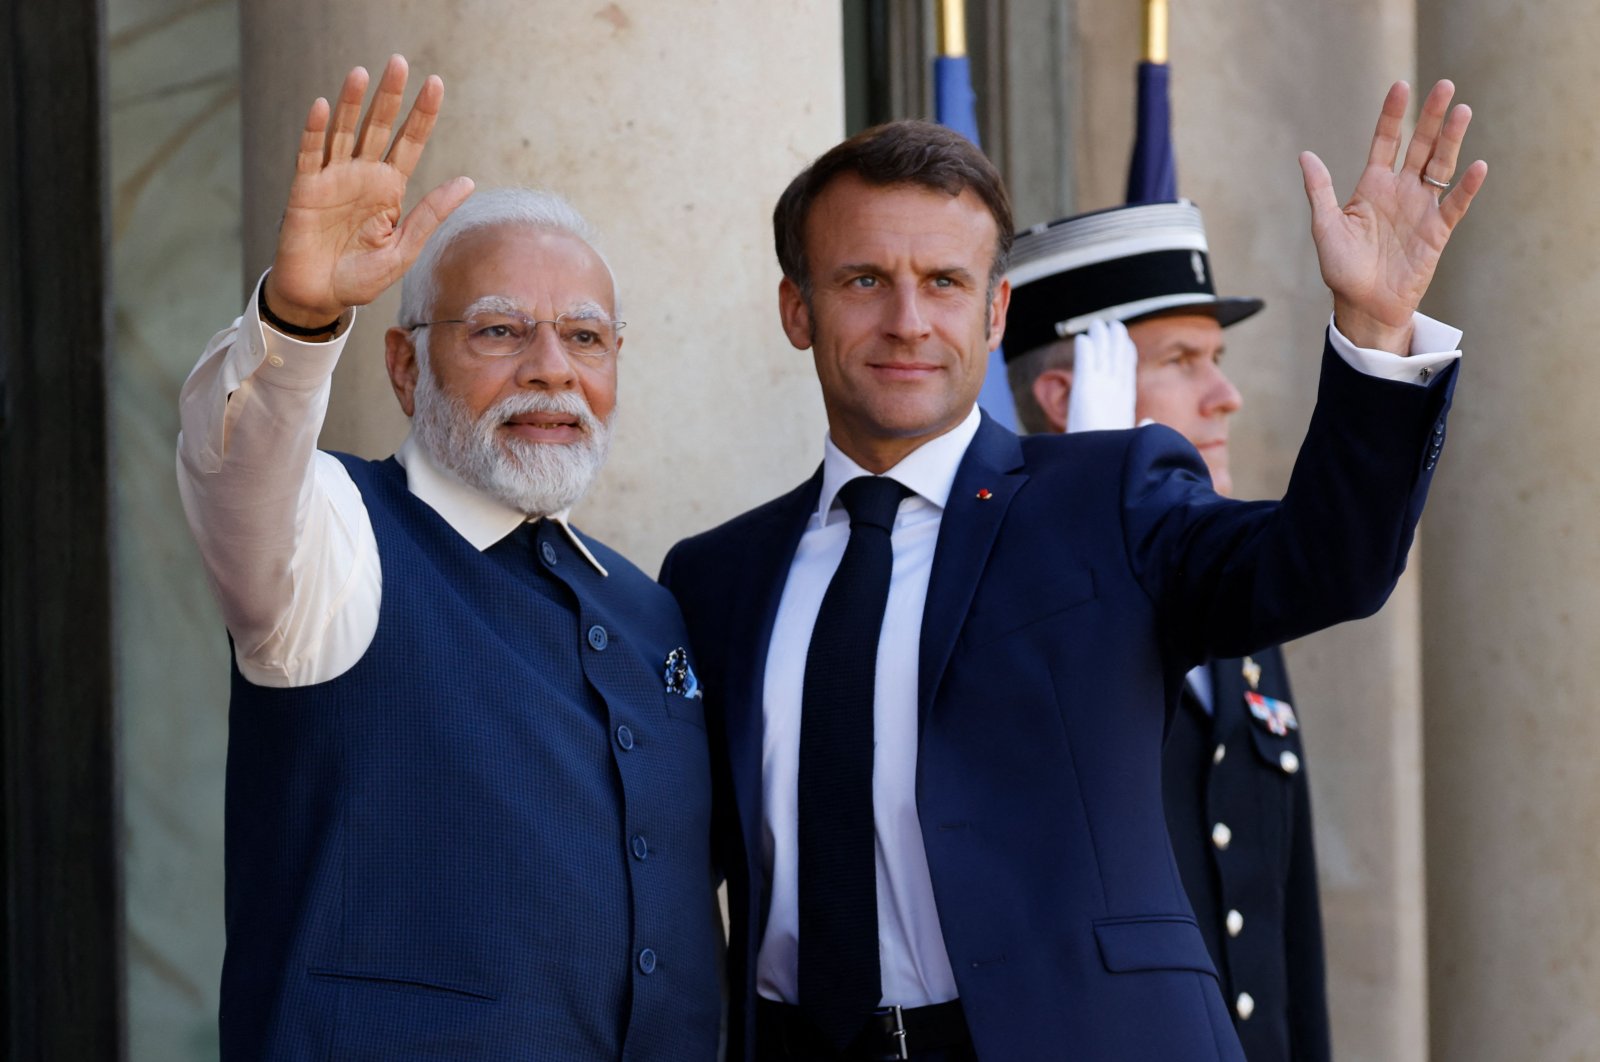 Prancis menghormati Modi pada Hari Bastille meskipun ada masalah hak asasi manusia